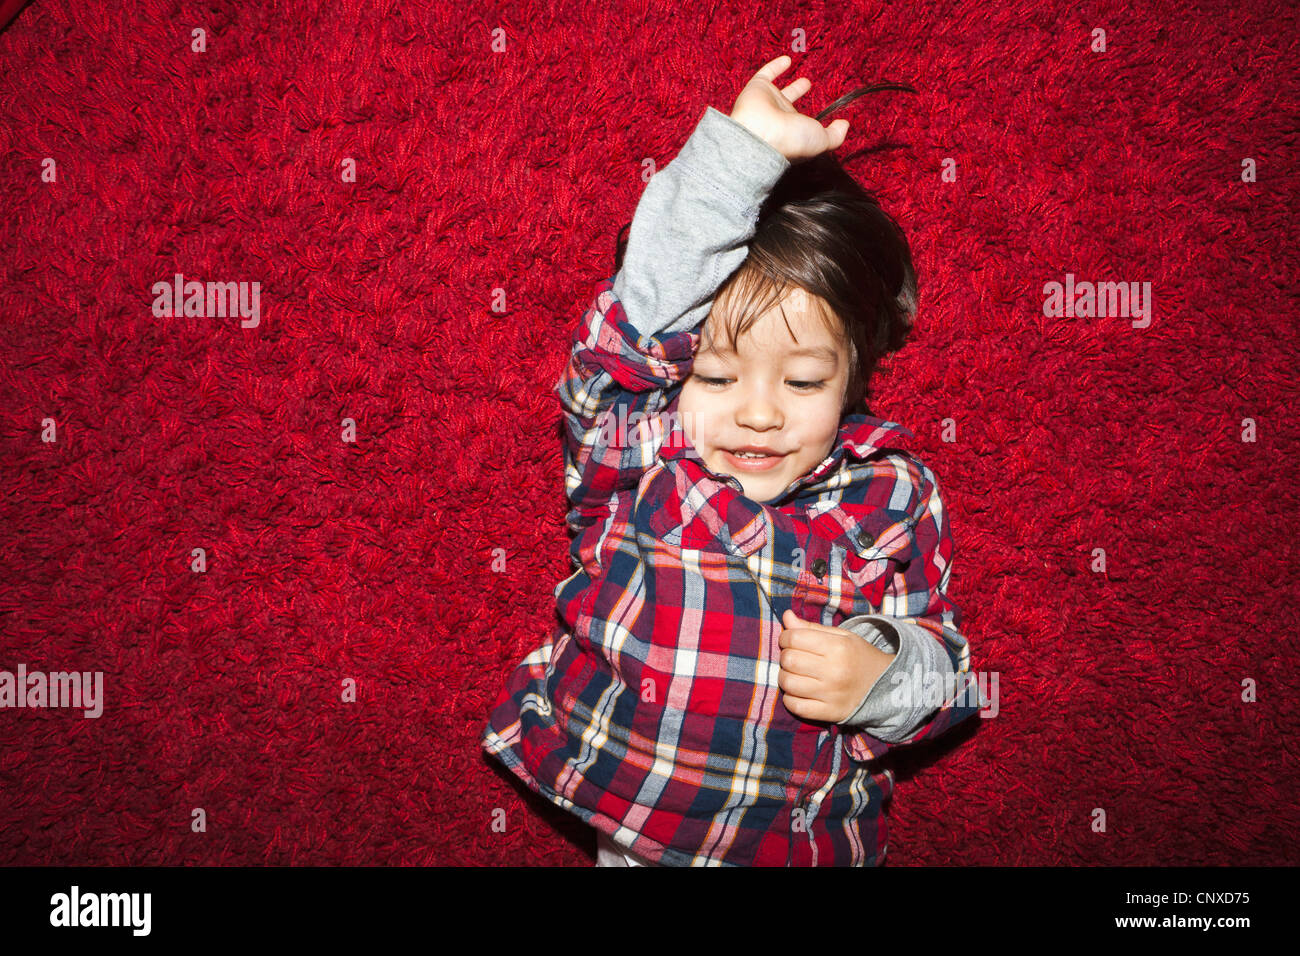 Eine lächelnde junge liegend auf einem roten Teppich Stockfoto